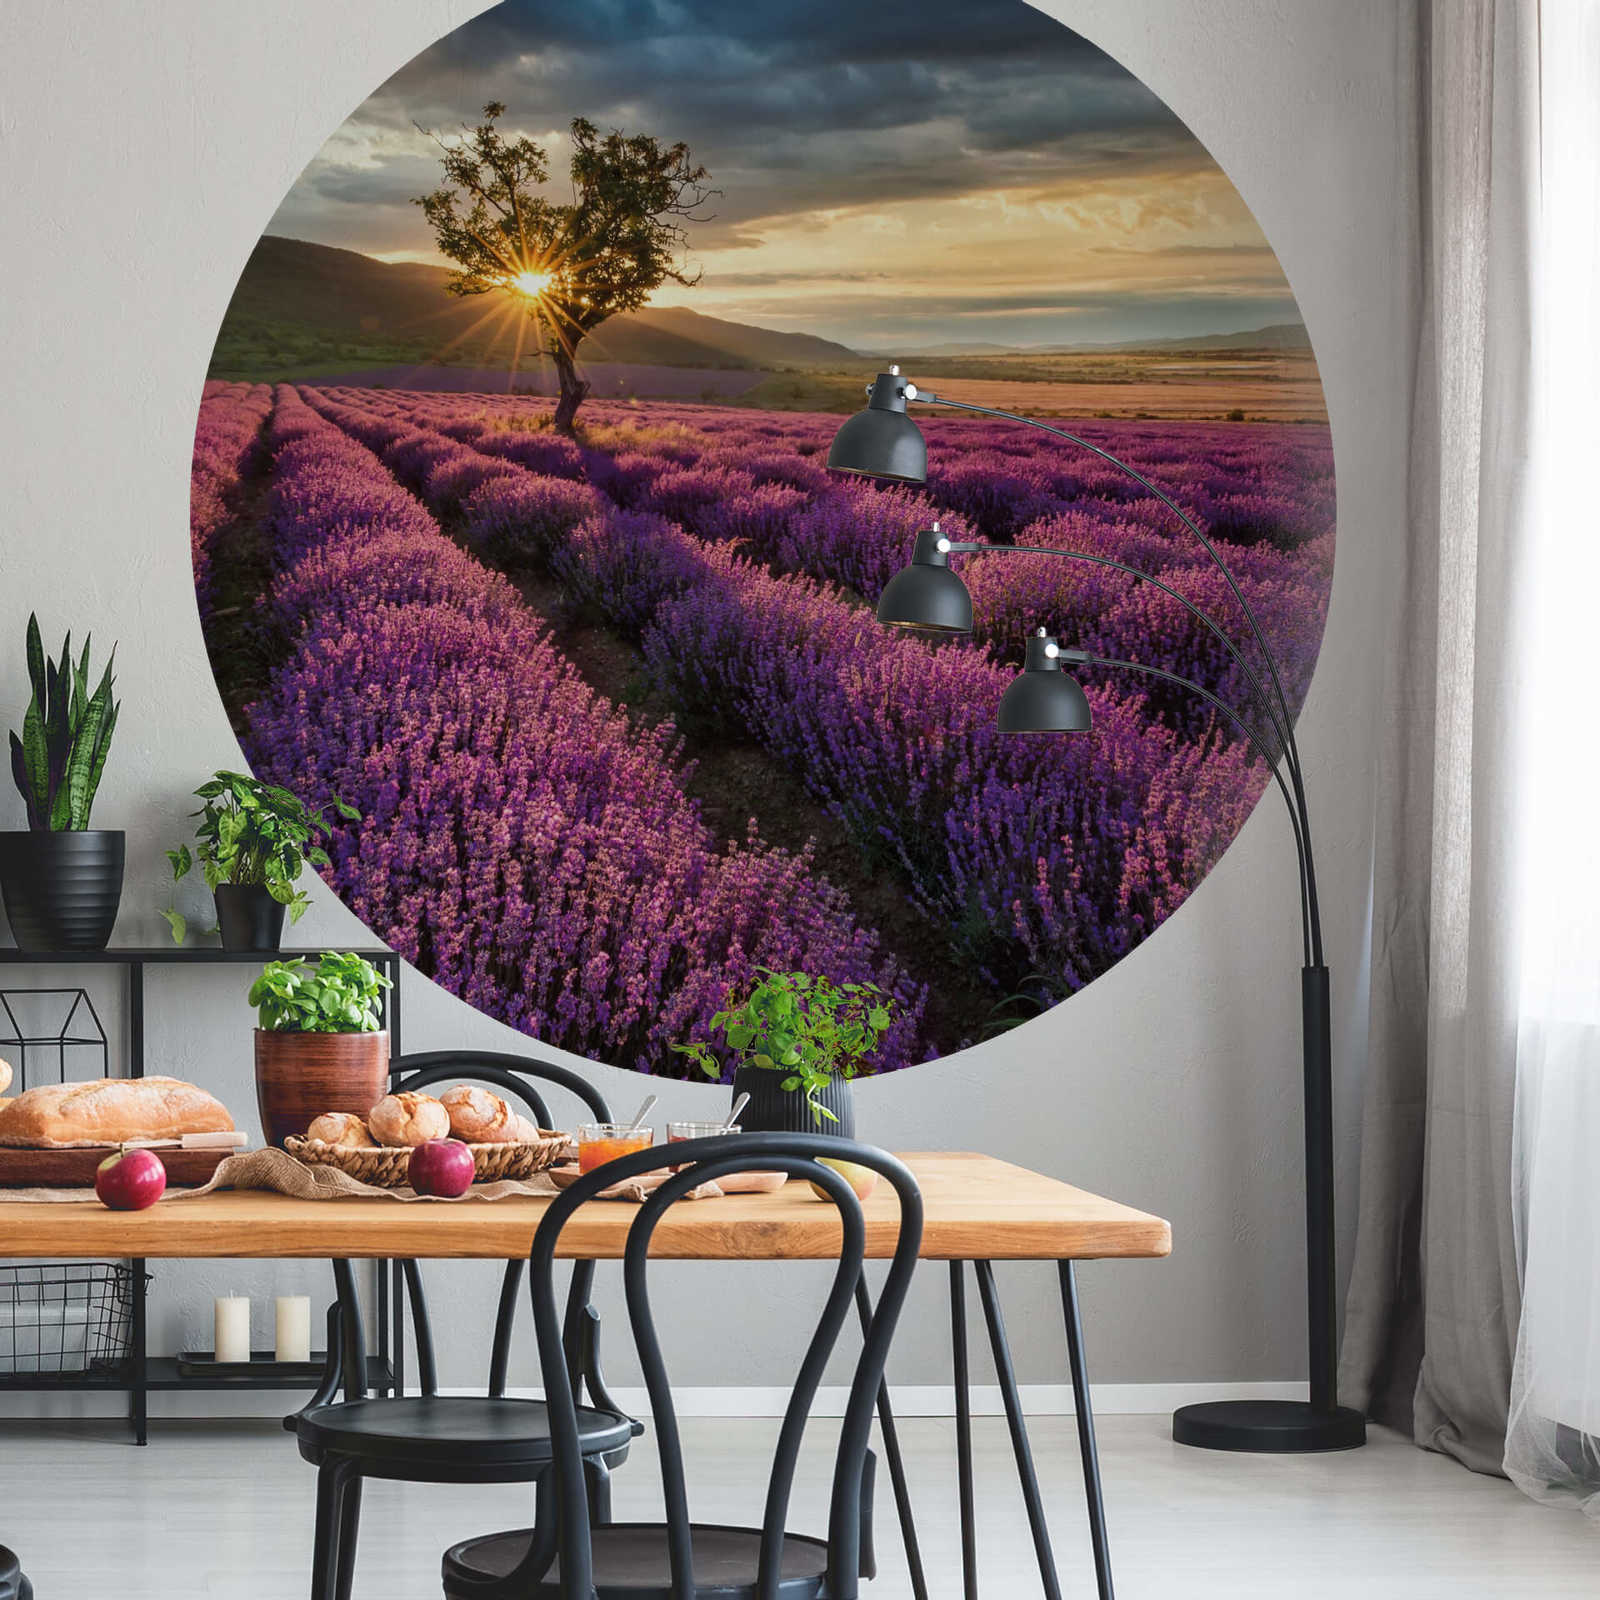             Papier peint panoramique rond champ de lavande en Provence
        